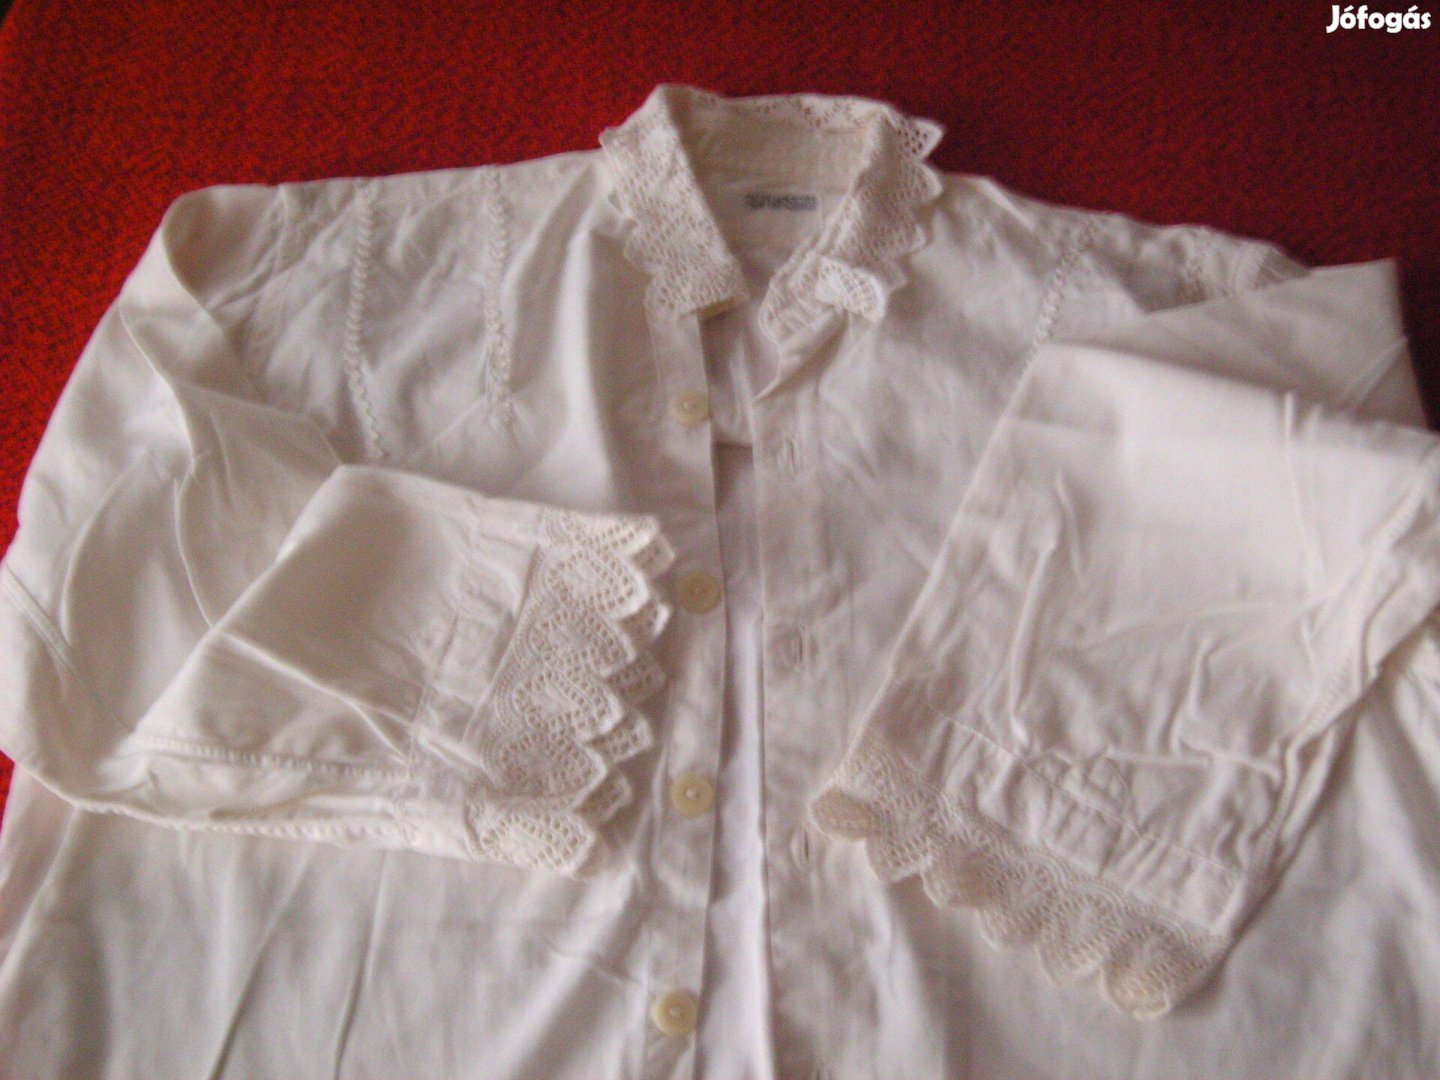 Retró-régi fehér csipkés ing, népviselet jellegű. M